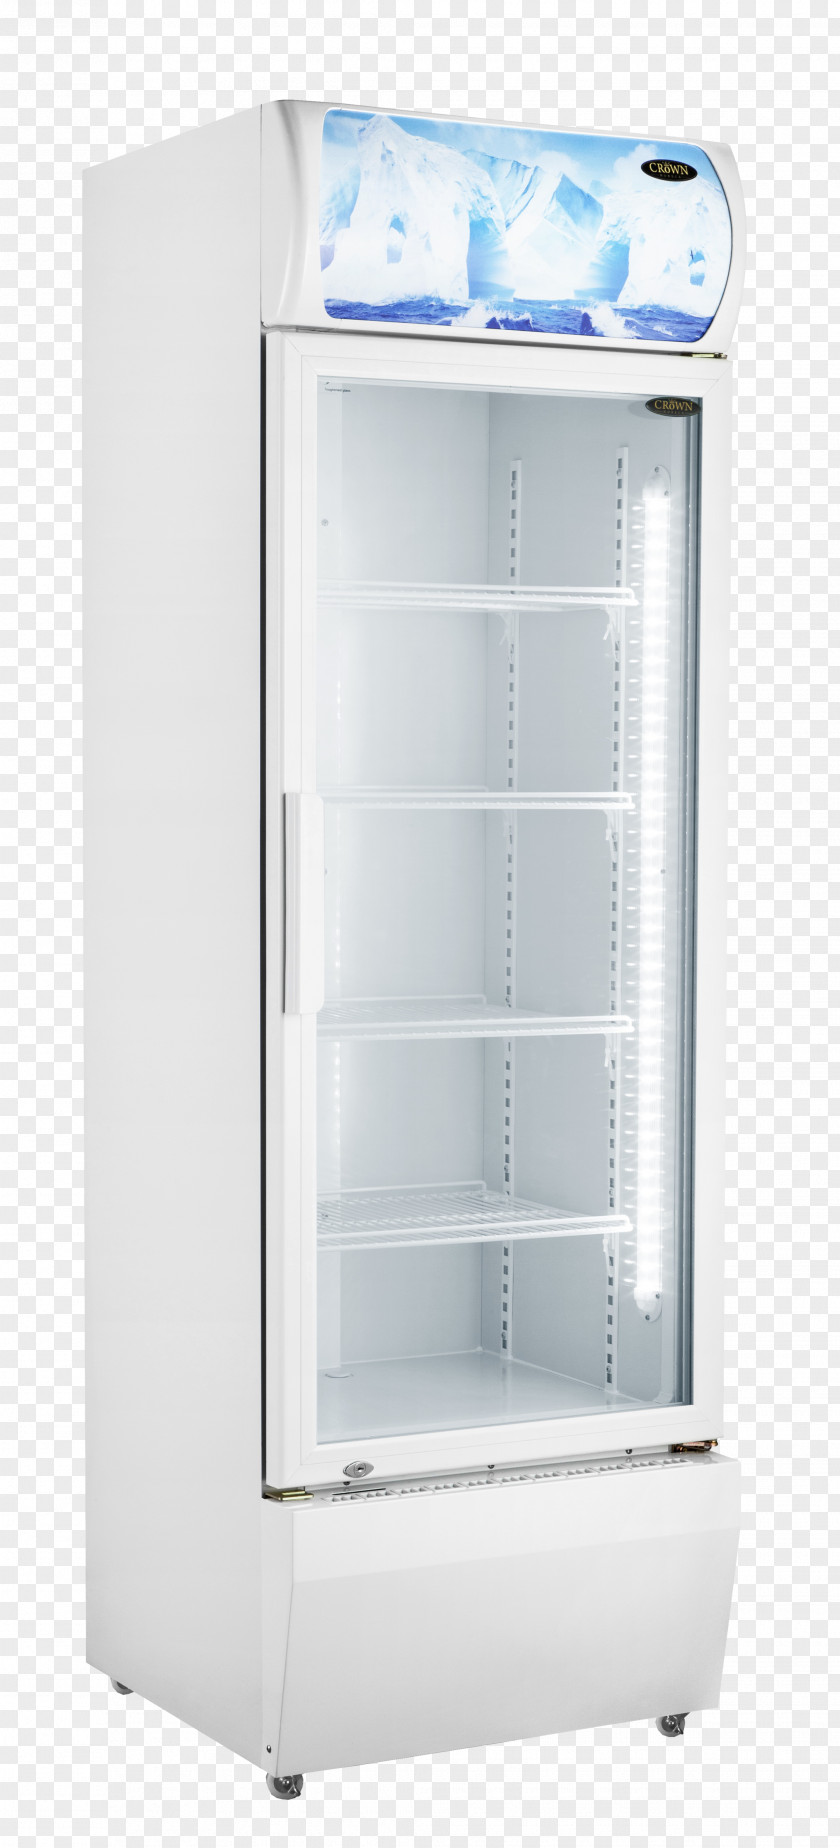 Refrigerator Chiller Cooler Drink LG Electronics PNG